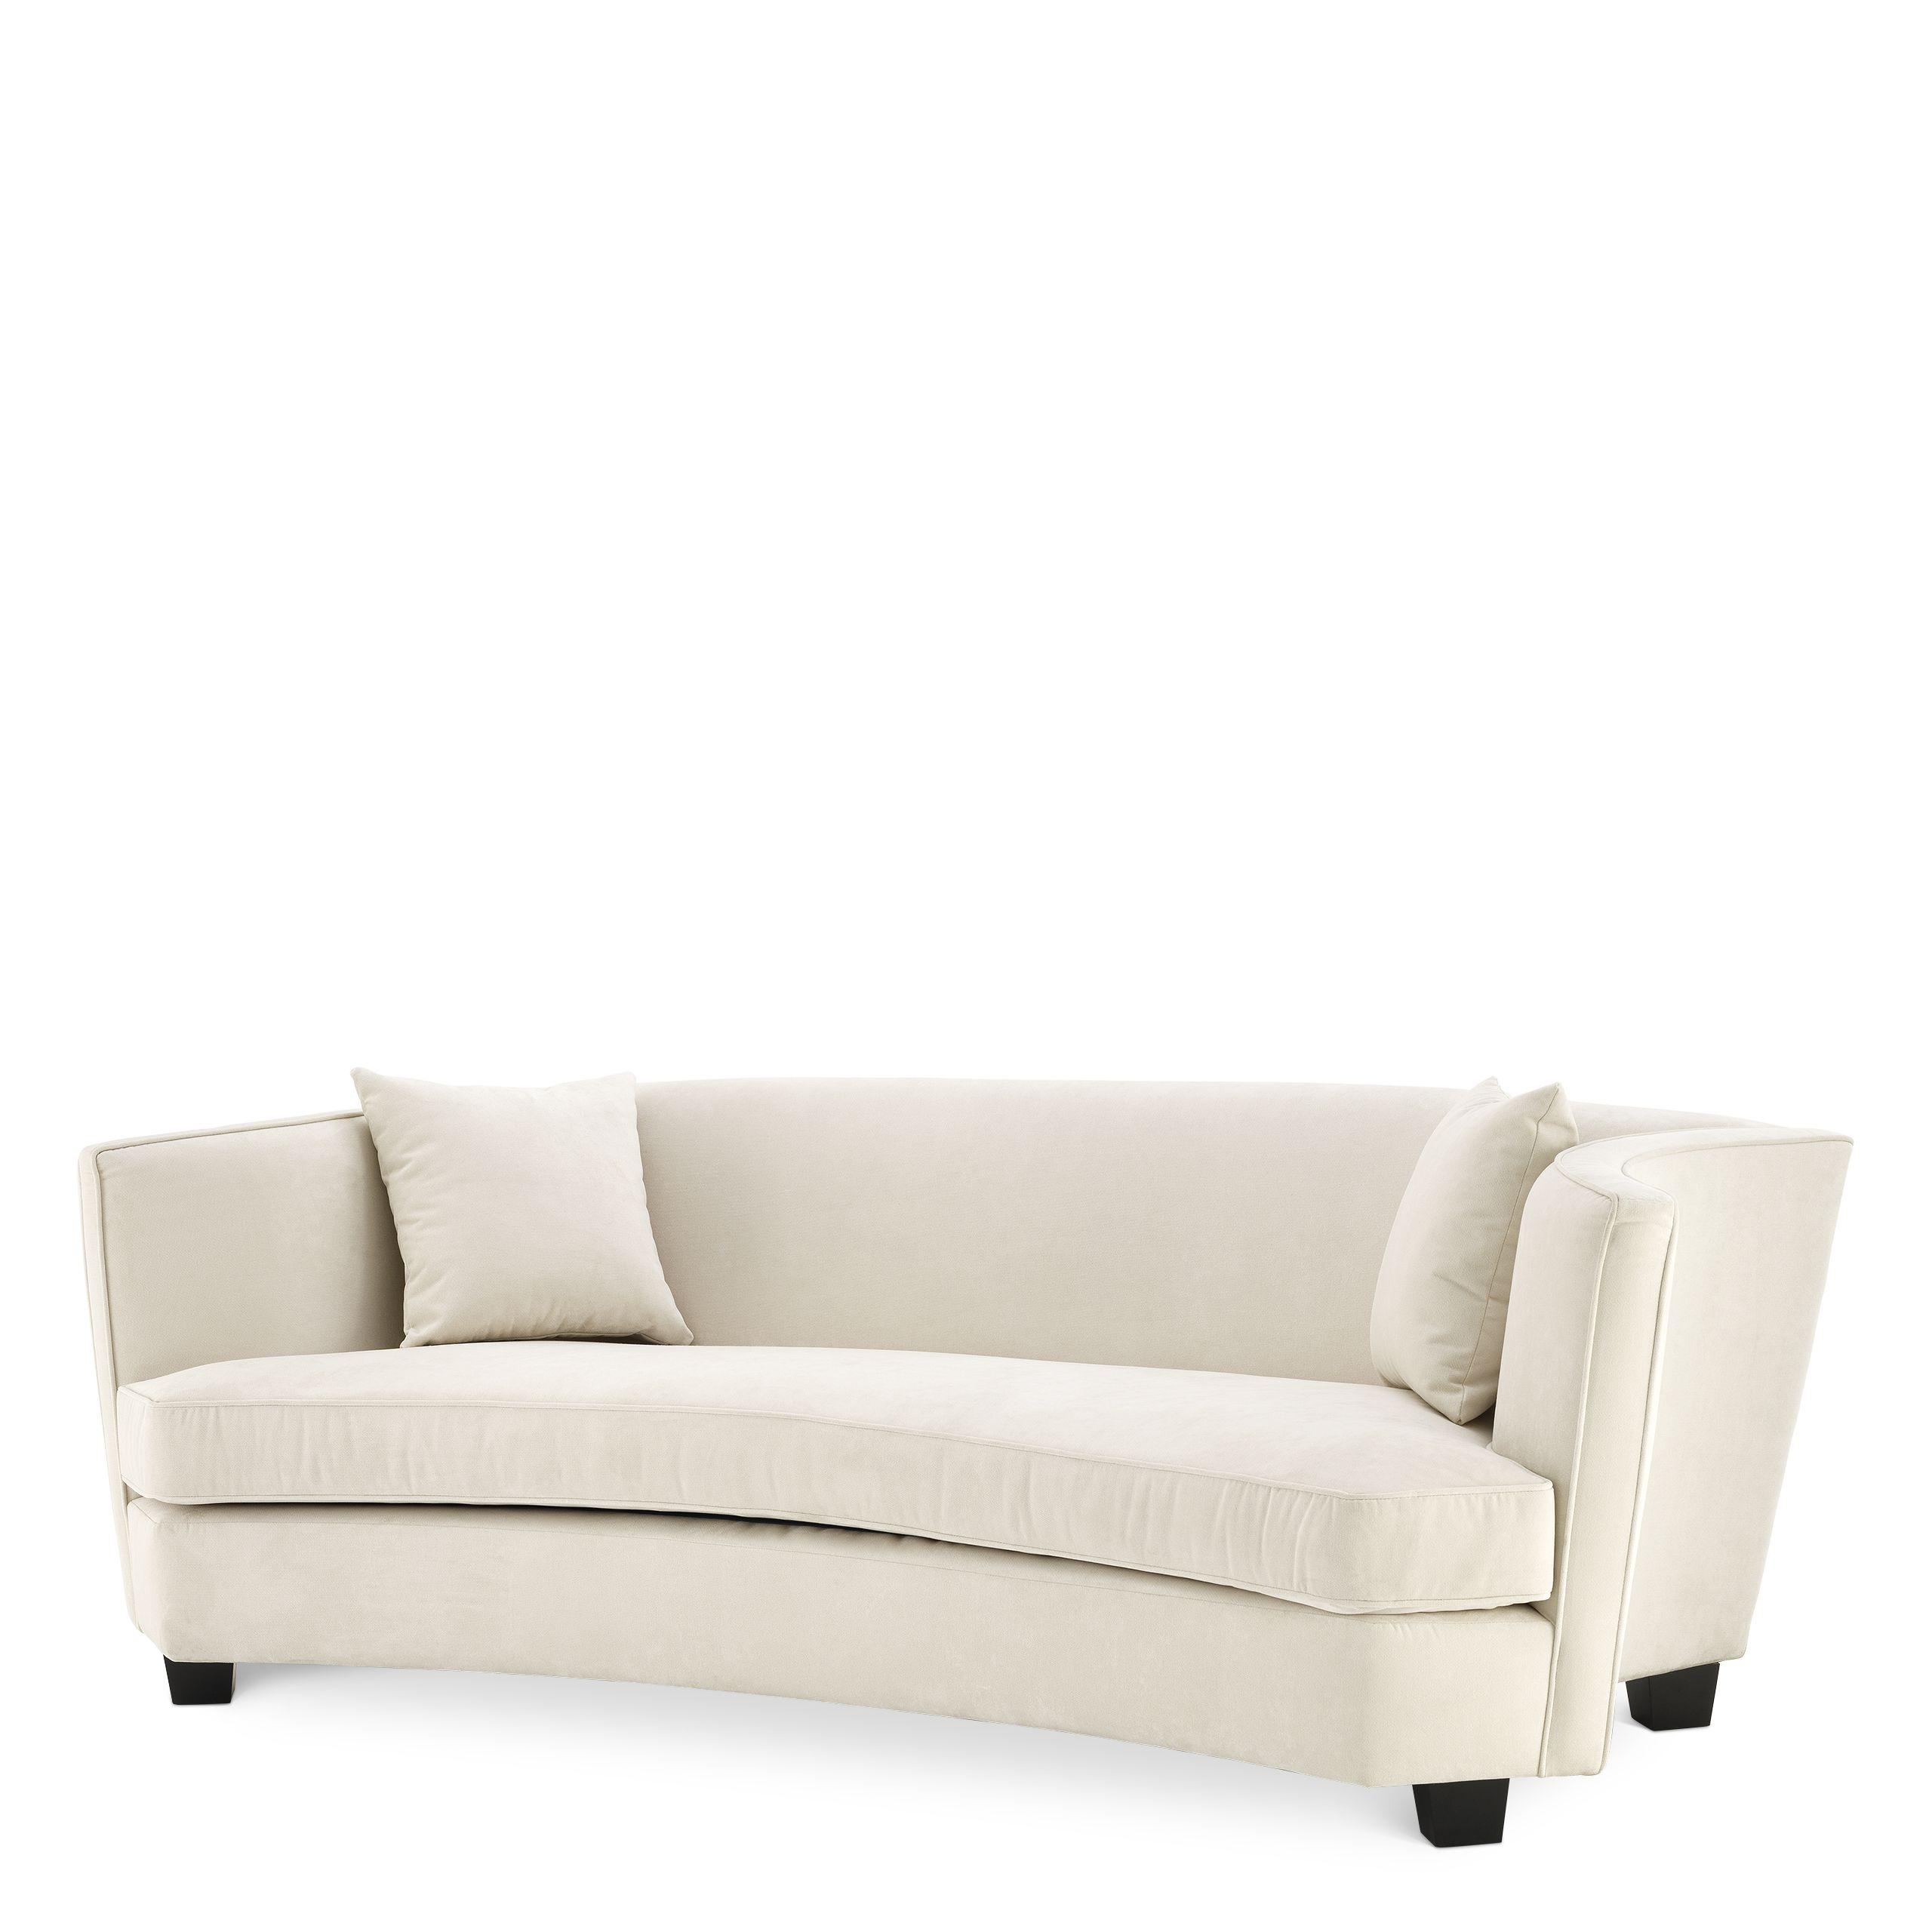 Купить Прямой диван Sofa Giulietta в интернет-магазине roooms.ru